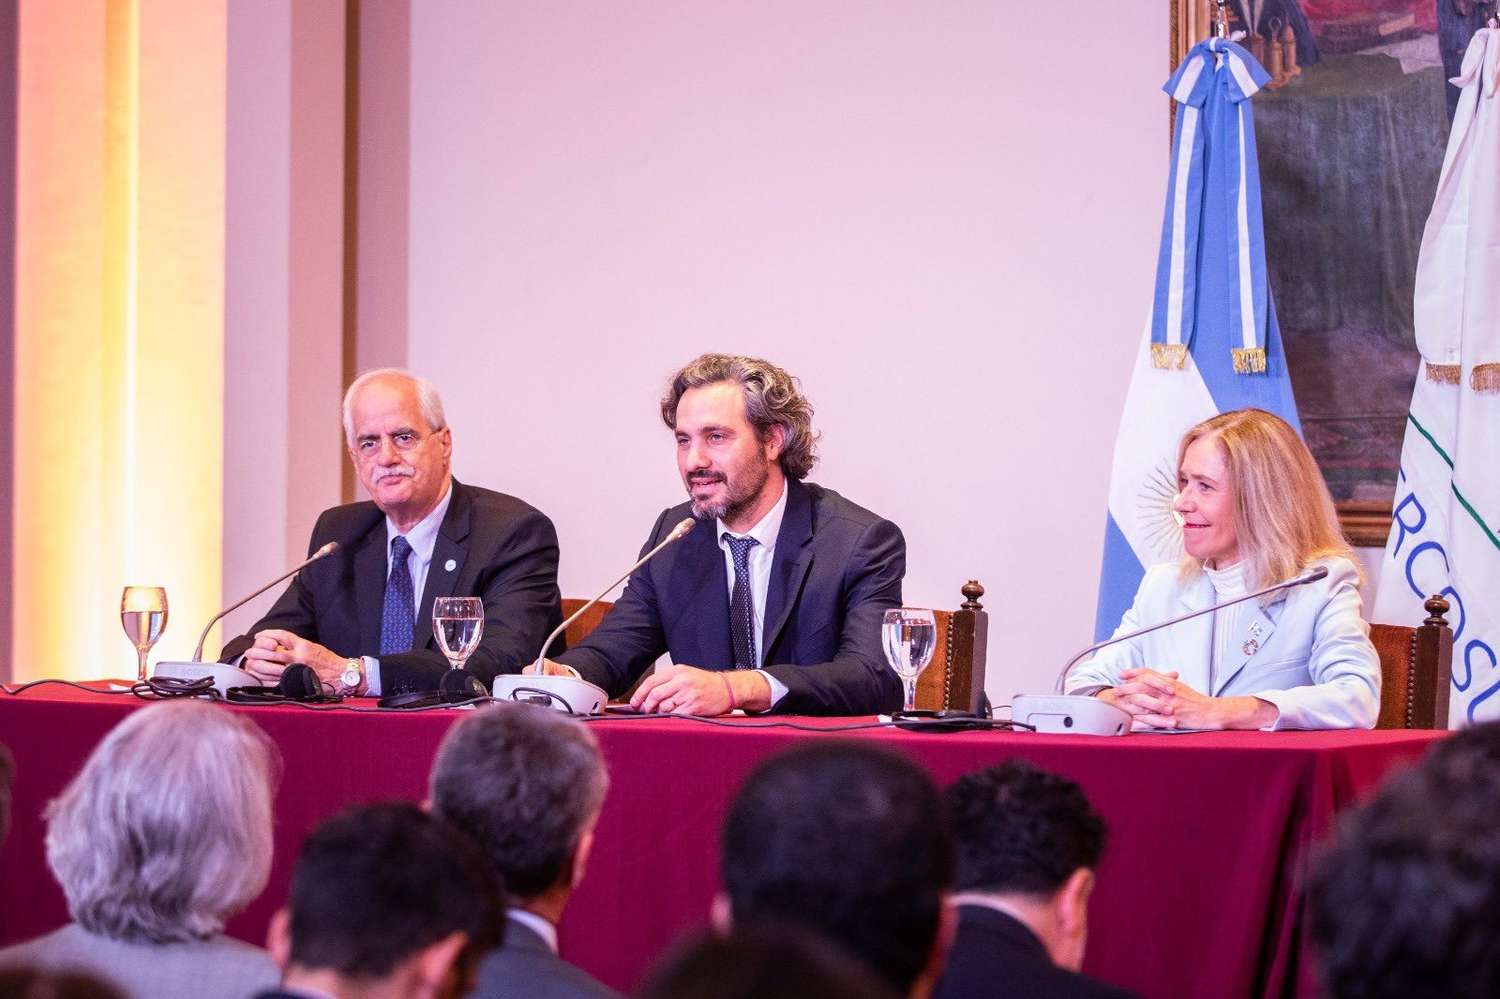 La argentina Celeste Saulo, primera mujer elegida para presidir la Organización Meteorológica Mundial